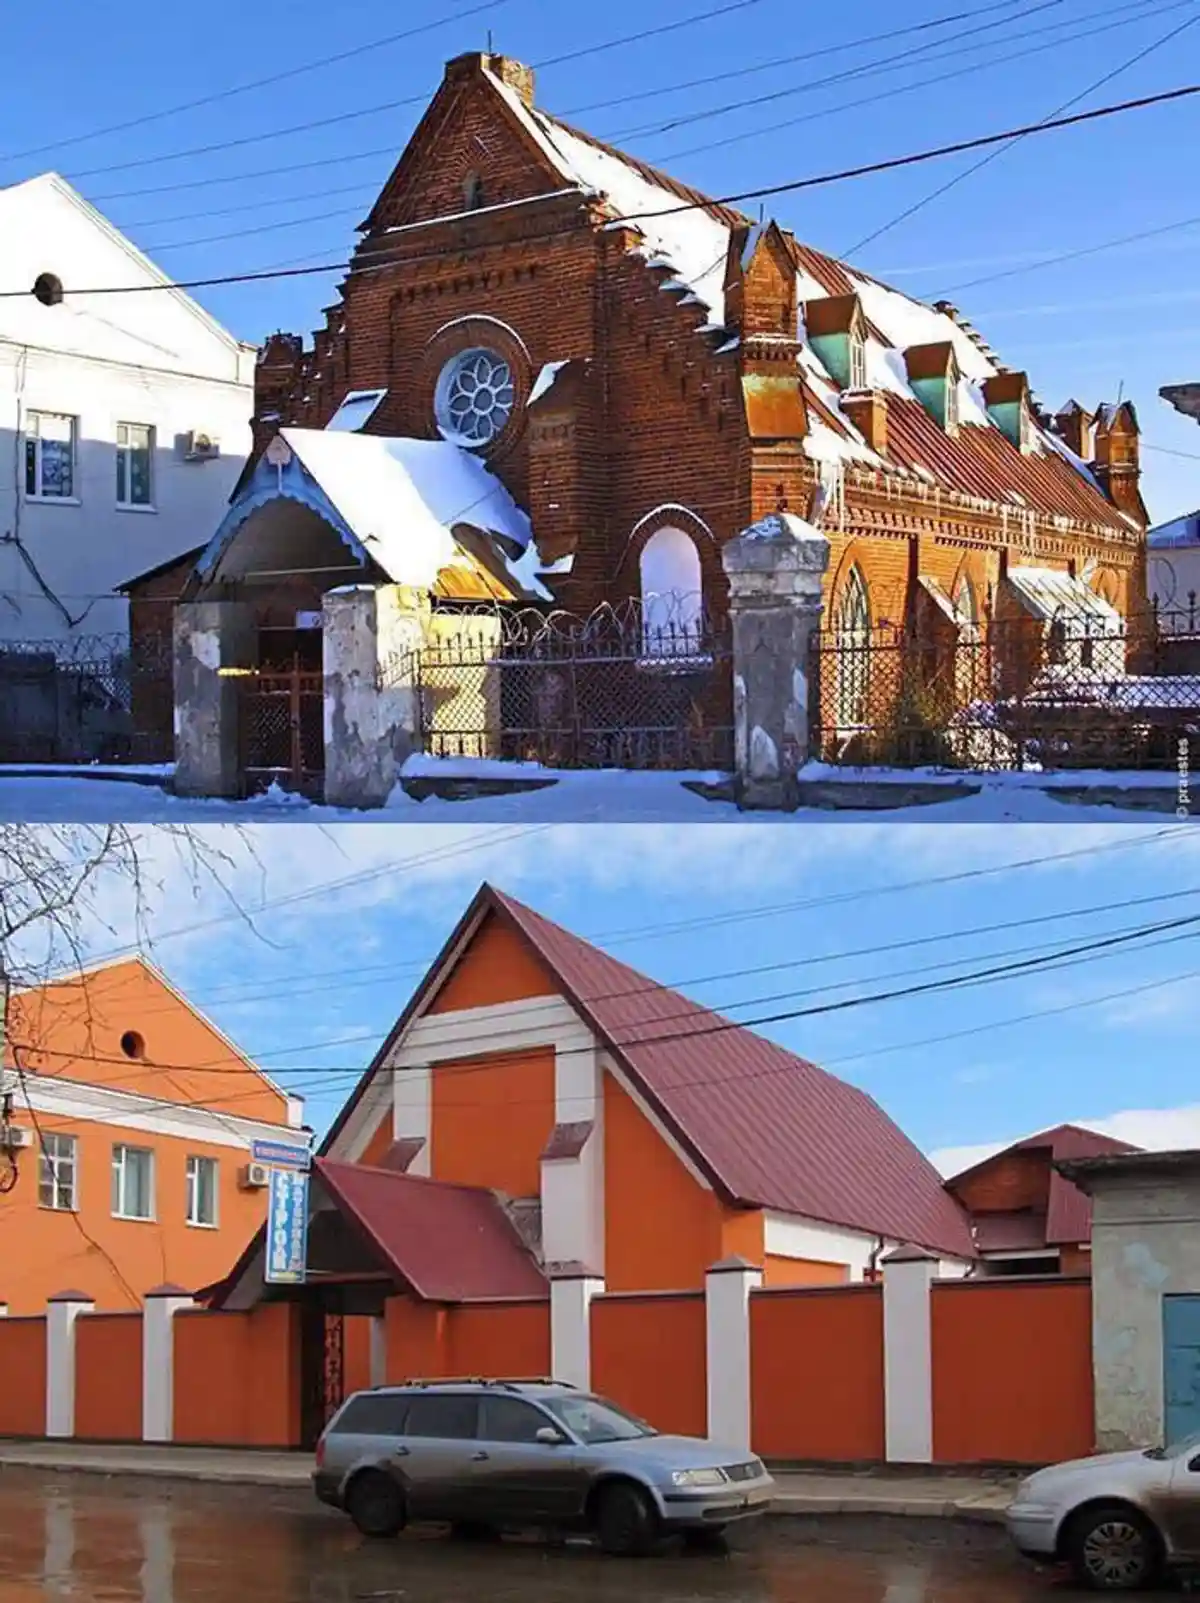 Кирха в Липецкой области после реставрации. Фото: varlamov.ru